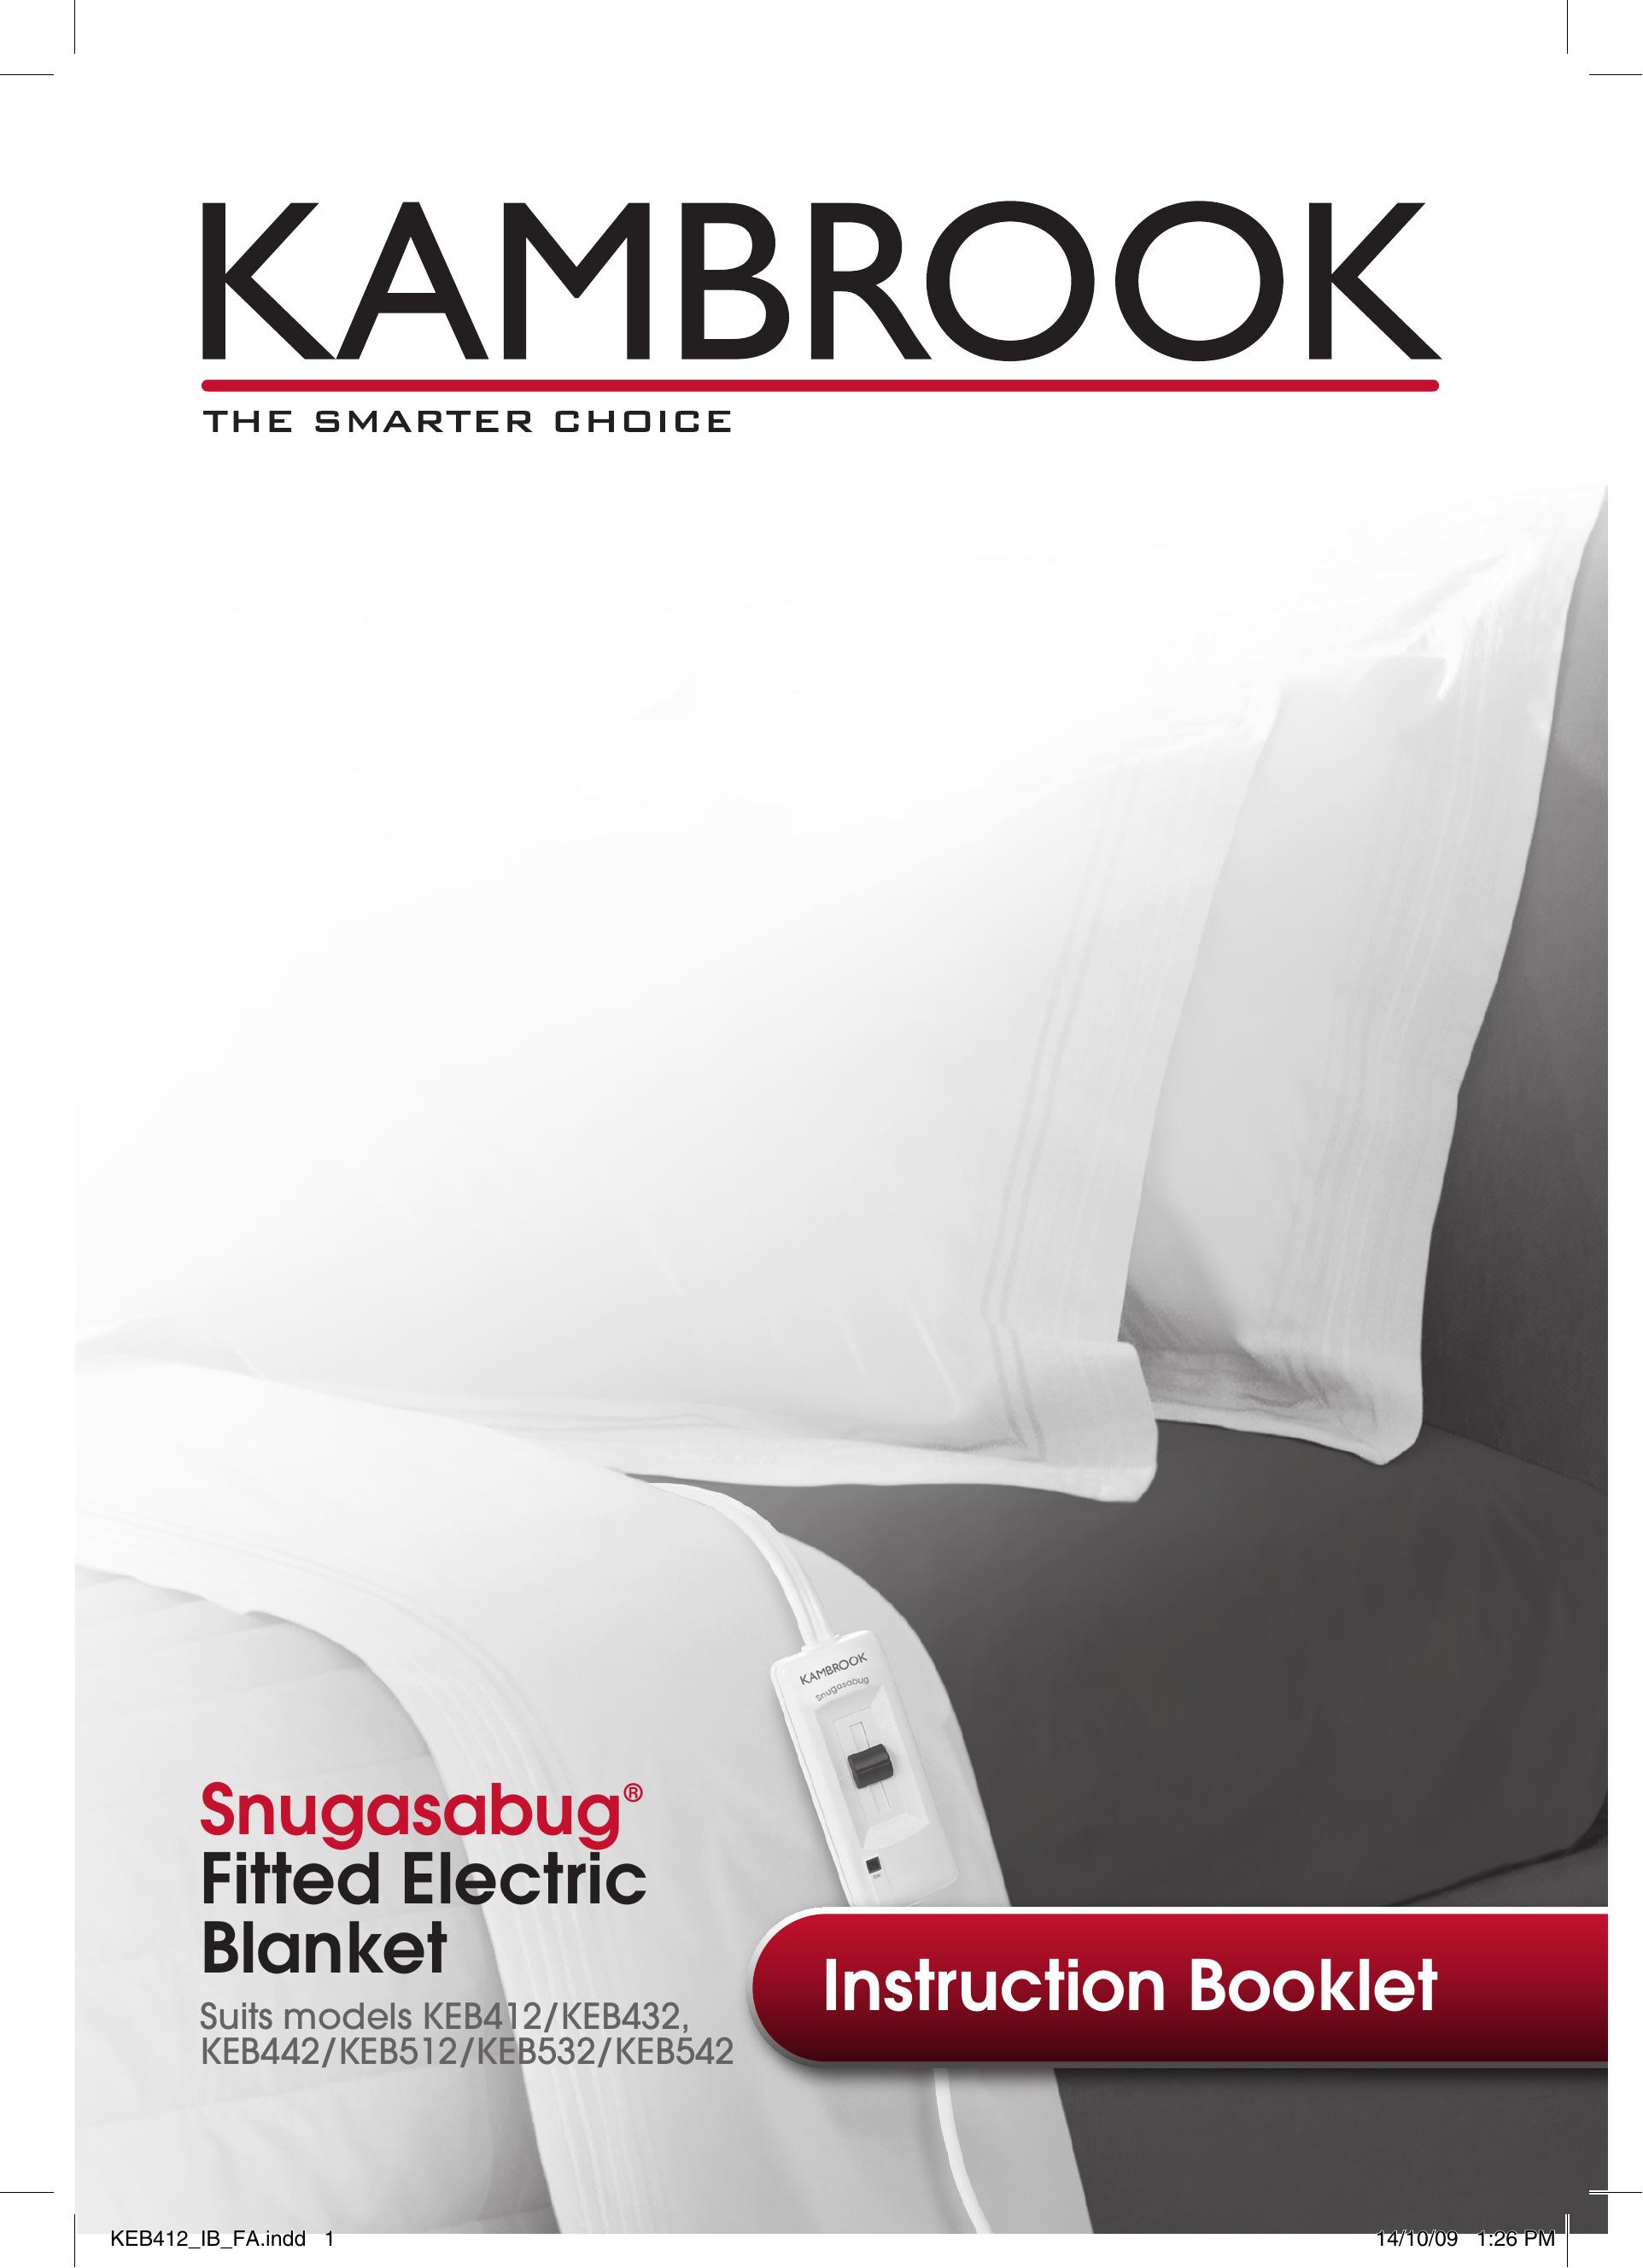 Kambrook KEB412 Yogurt Maker User Manual